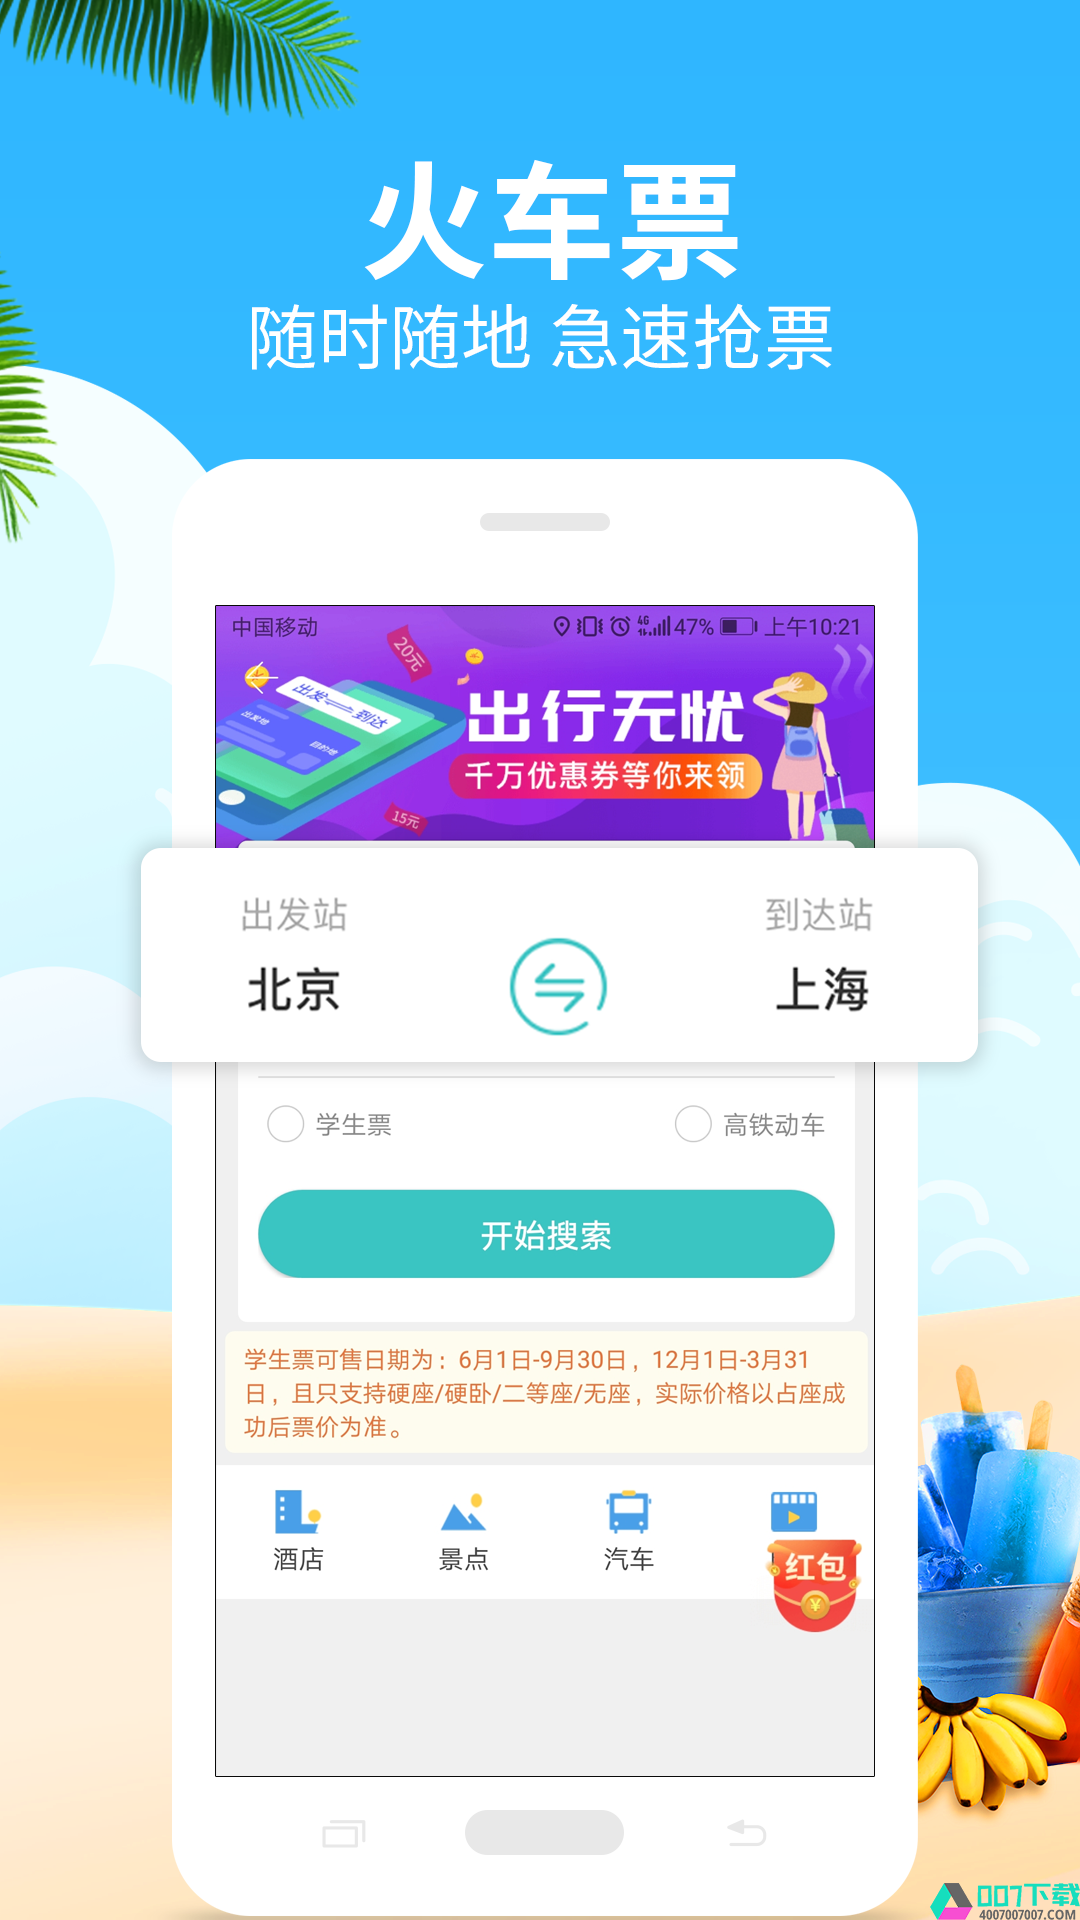 快票出行app下载_快票出行app最新版免费下载